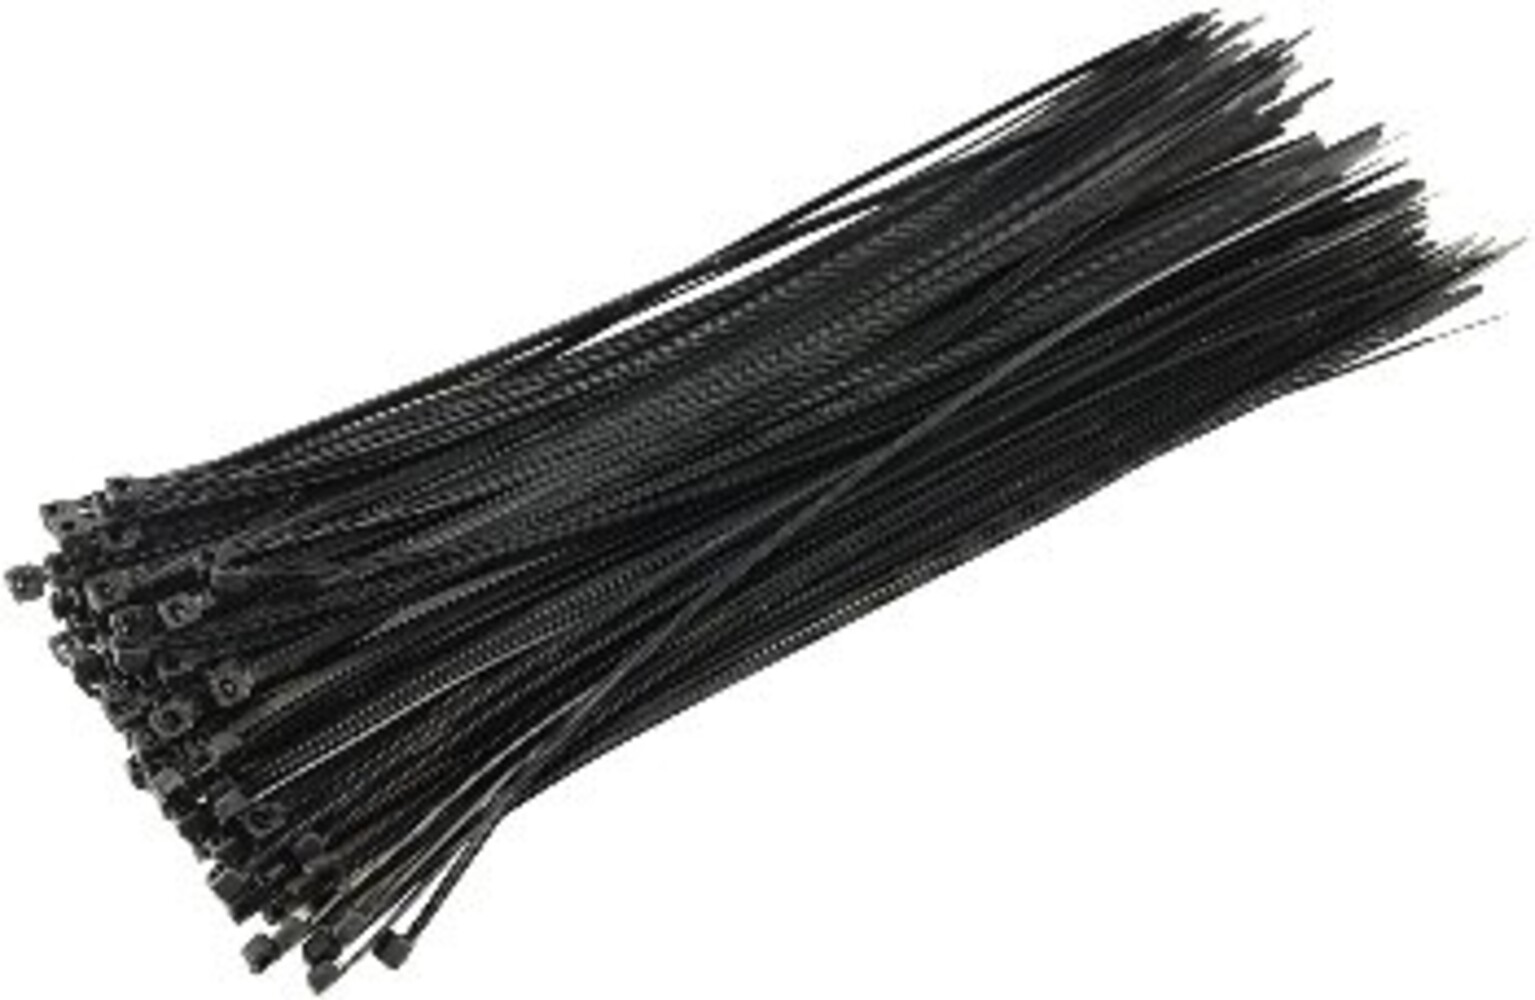 Stabiler schwarzer Kabelbinder von der Marke ChiliTec mit hoher Zugkraft